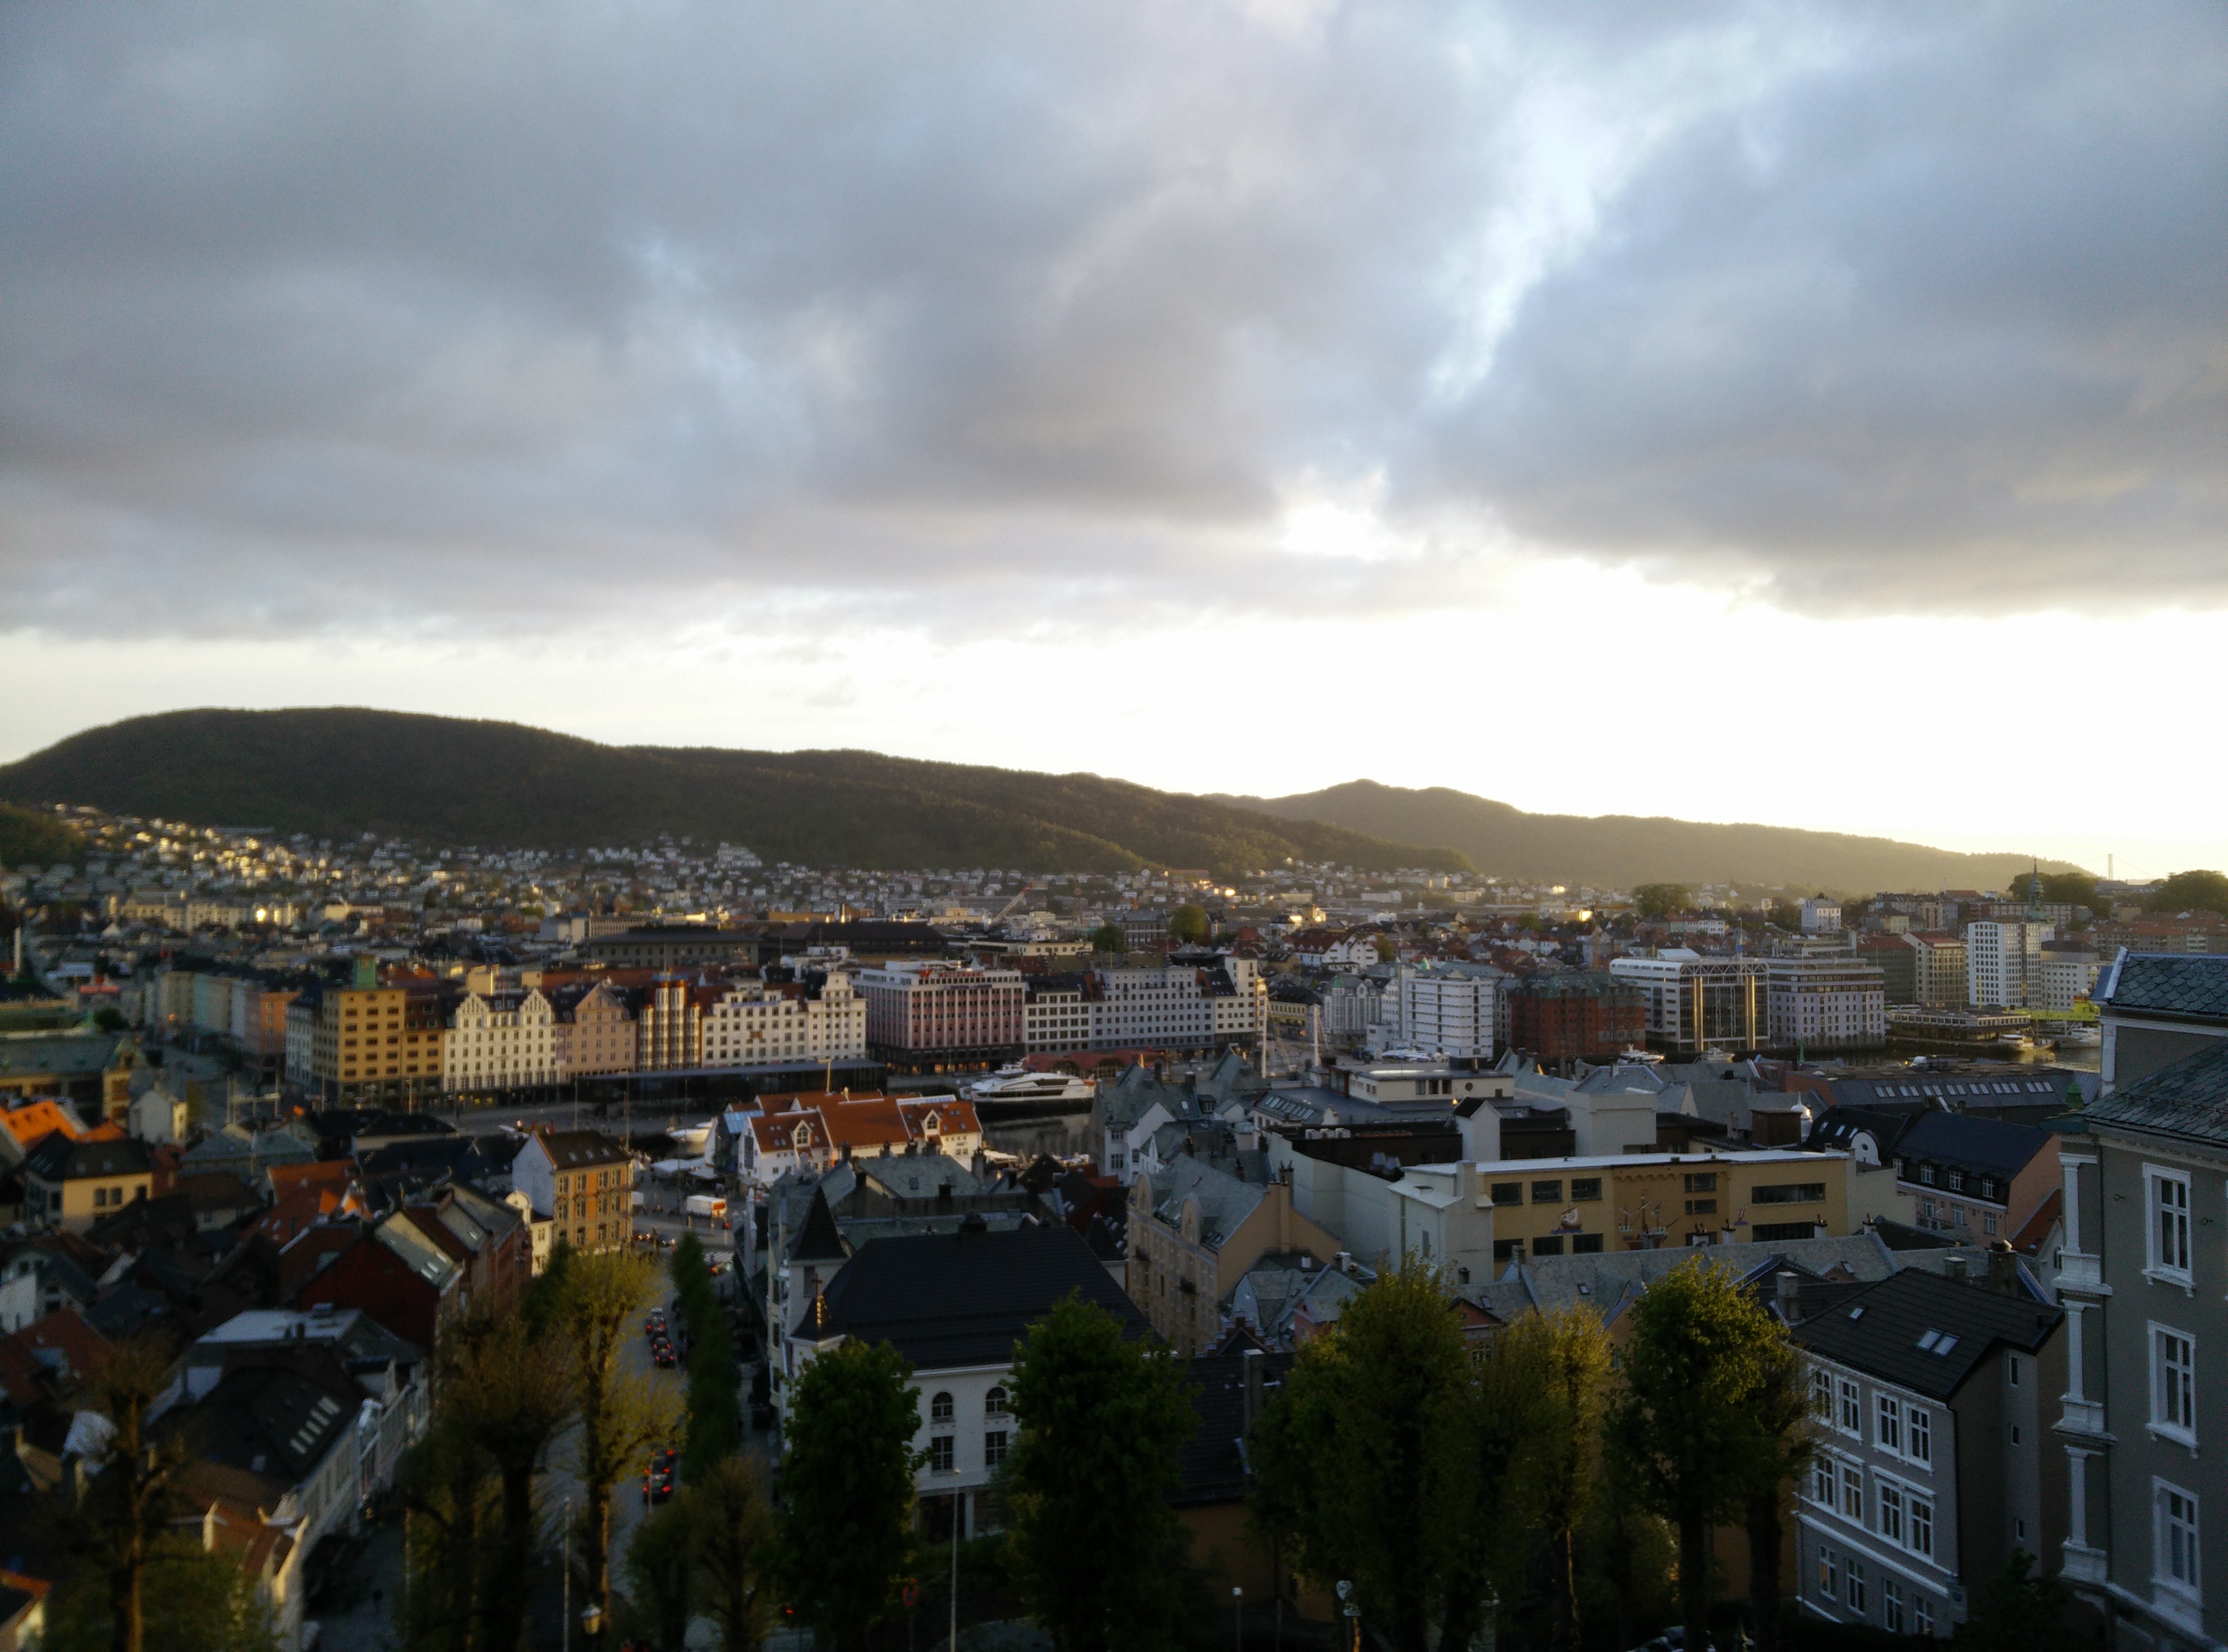 Overlooking the city of Bergen, Norway